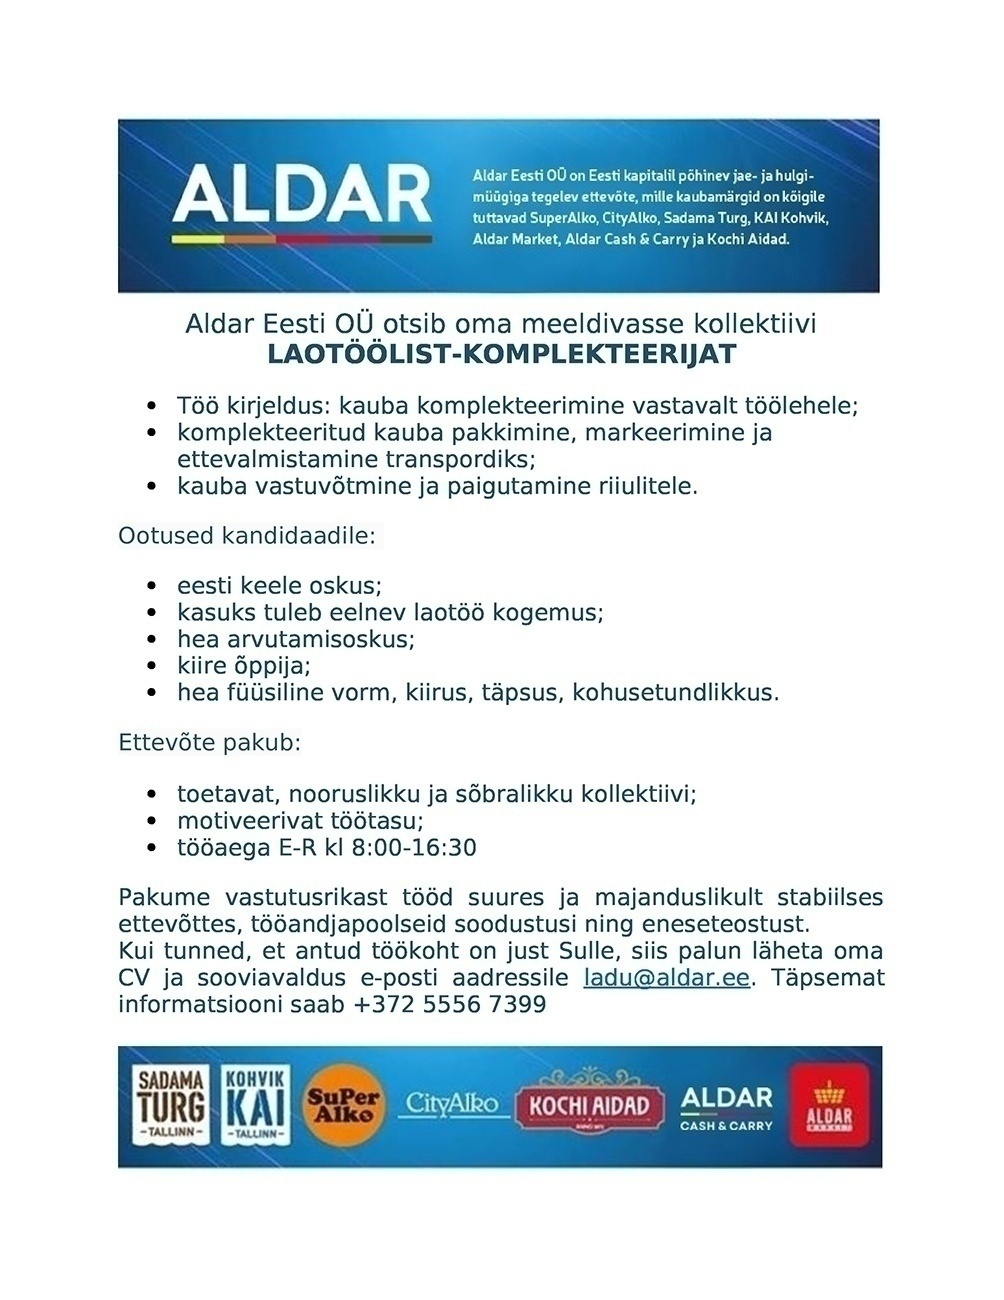 Aldar Eesti OÜ Laotööline-komplekteerija